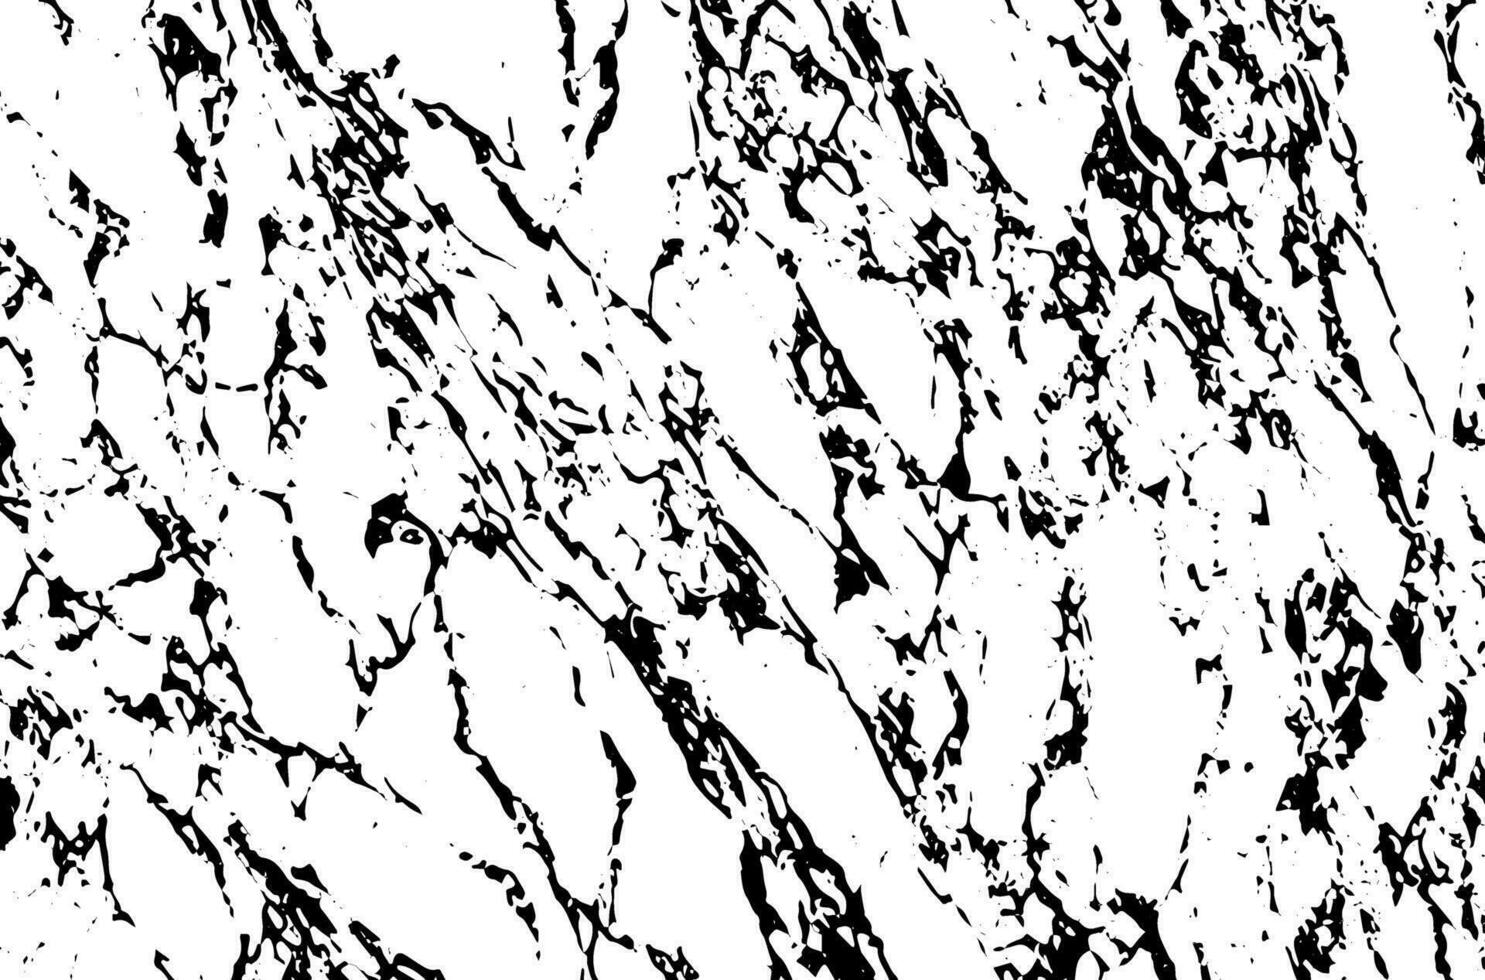 zwart-wit marmeren textuur achtergrond vector